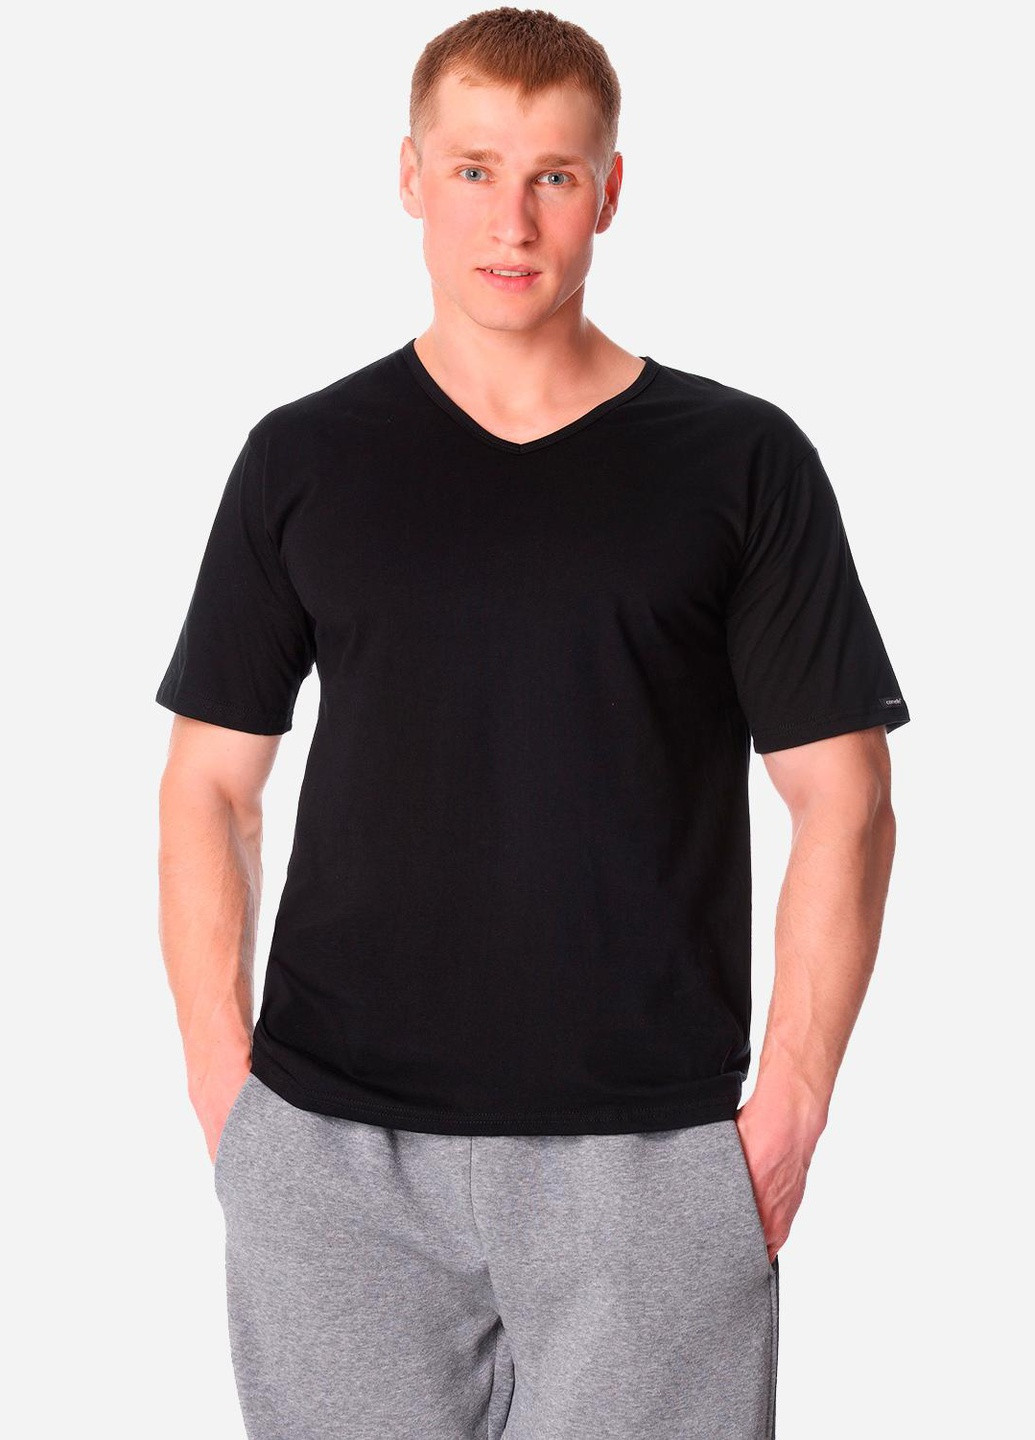 Черная футболка чоловіча concord 4xl чорний 201 Cornette